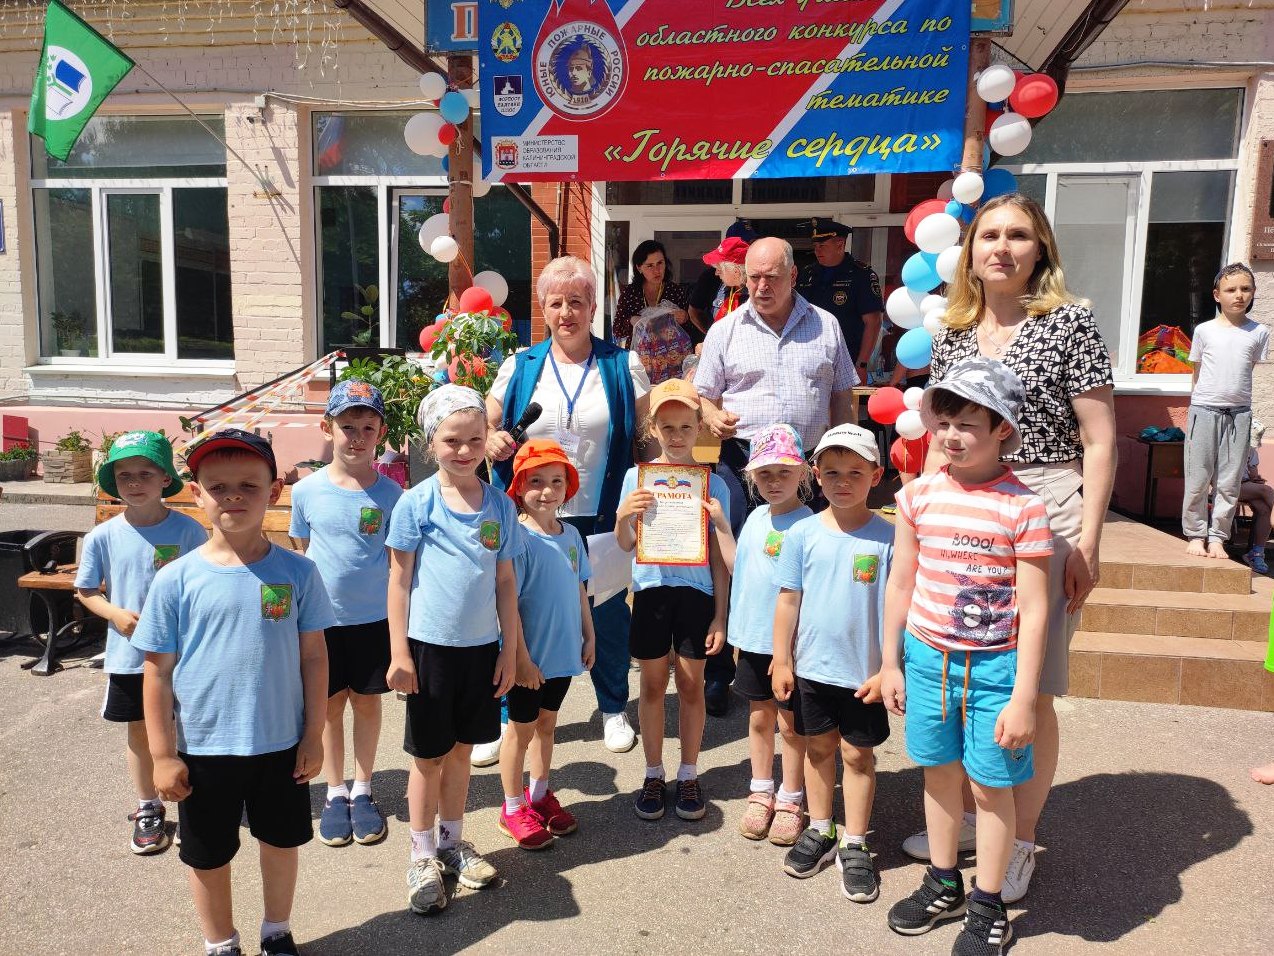 Детсадовцы из Холмогоровки взяли бронзу в областном конкурсе юных пожарных 